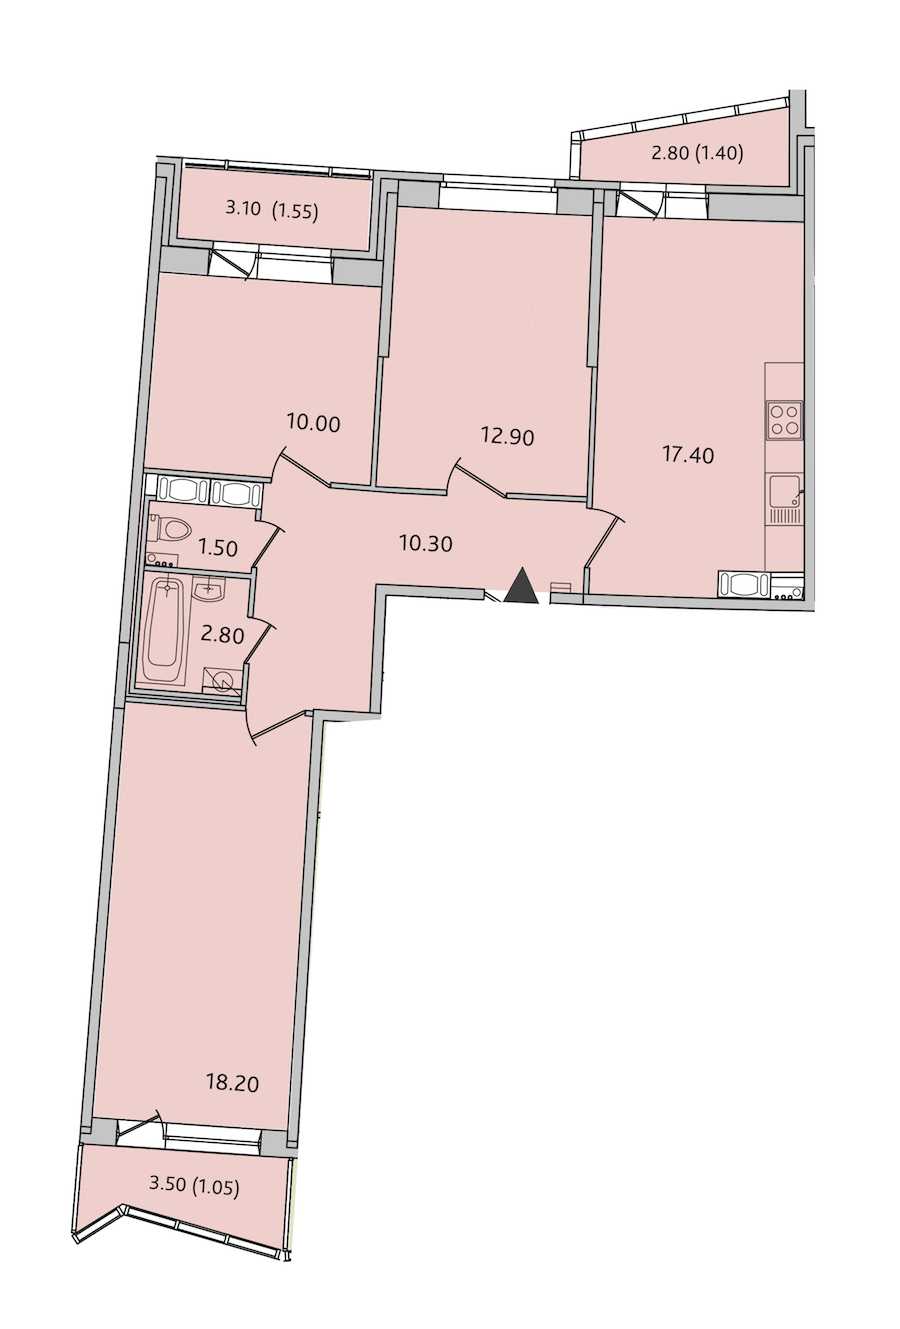 Трехкомнатная квартира в : площадь 77.1 м2 , этаж: 8 – купить в Санкт-Петербурге